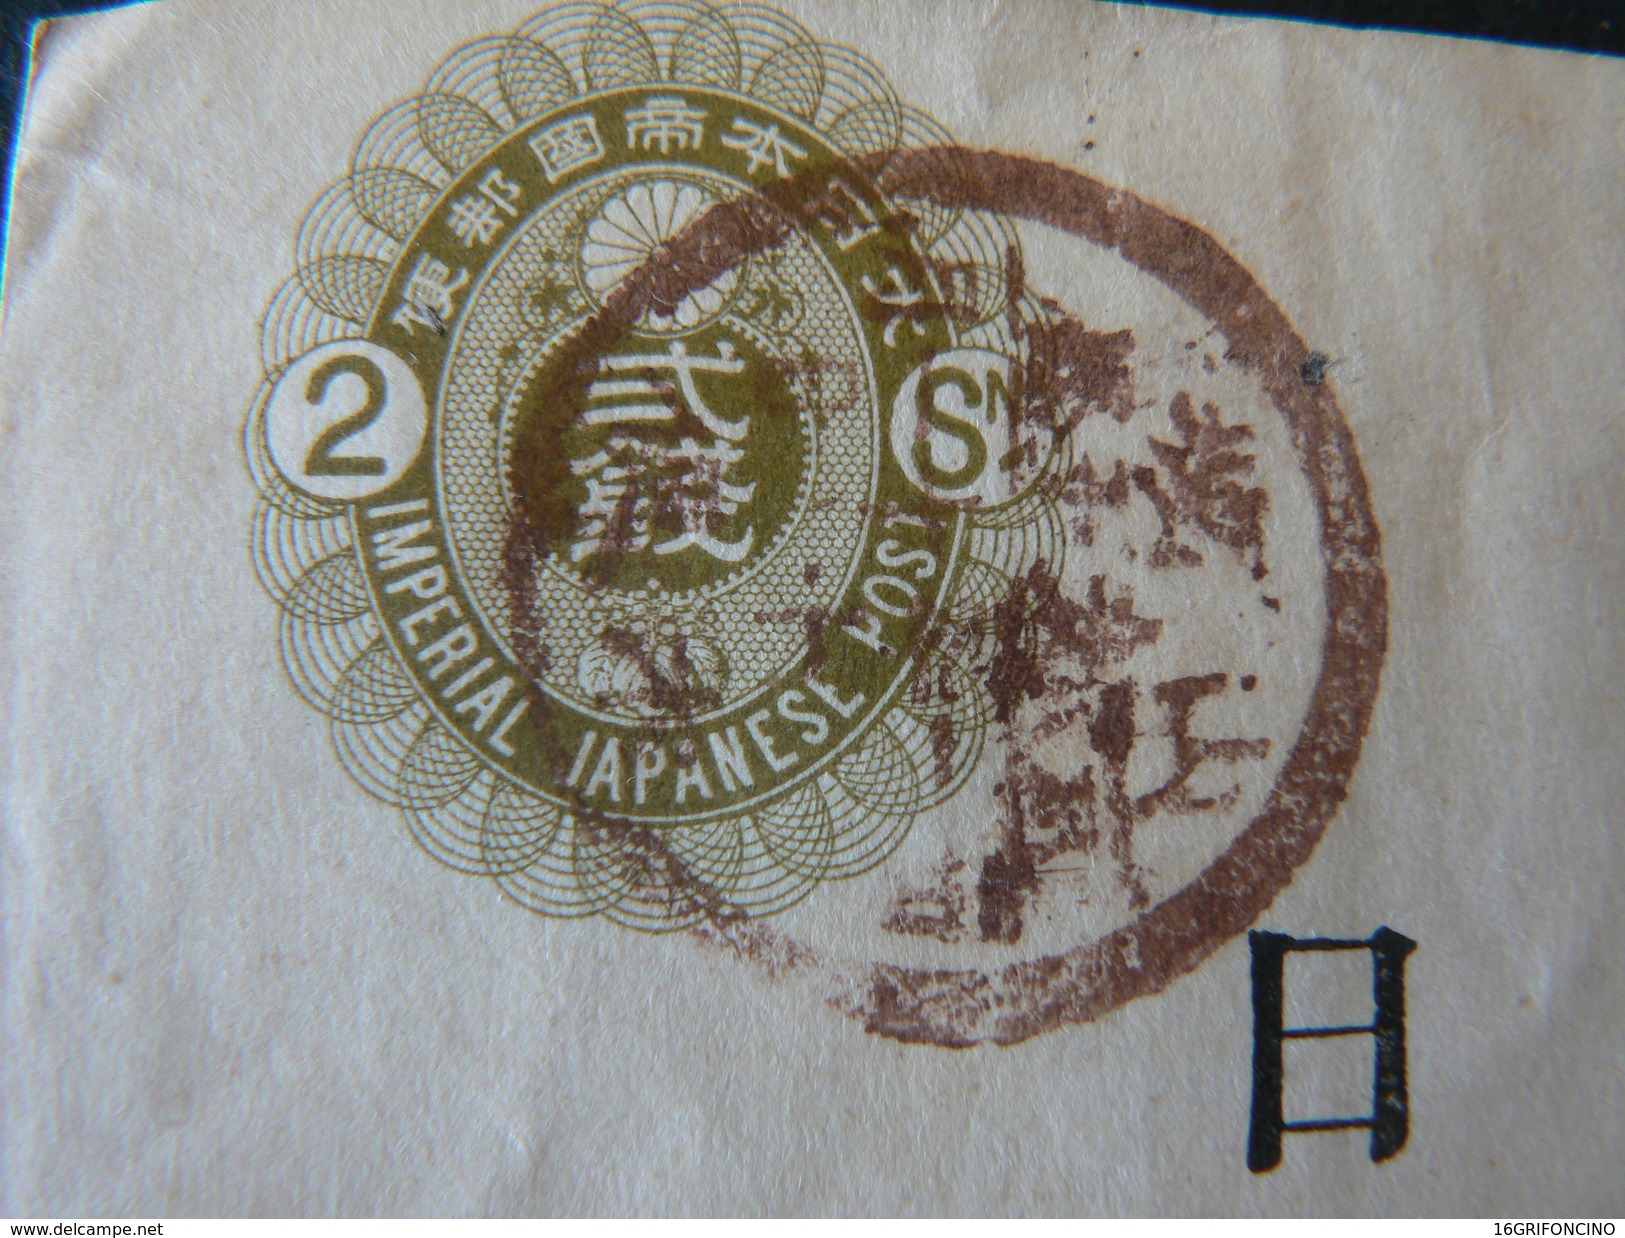 ANCIENT LETTER  OF JAPAN   OF VALUE OF 2 S  //  ANTICO INTERO SU BUSTA GIAPPONESE CON FRANCOBOLLO DA 2 S - Covers